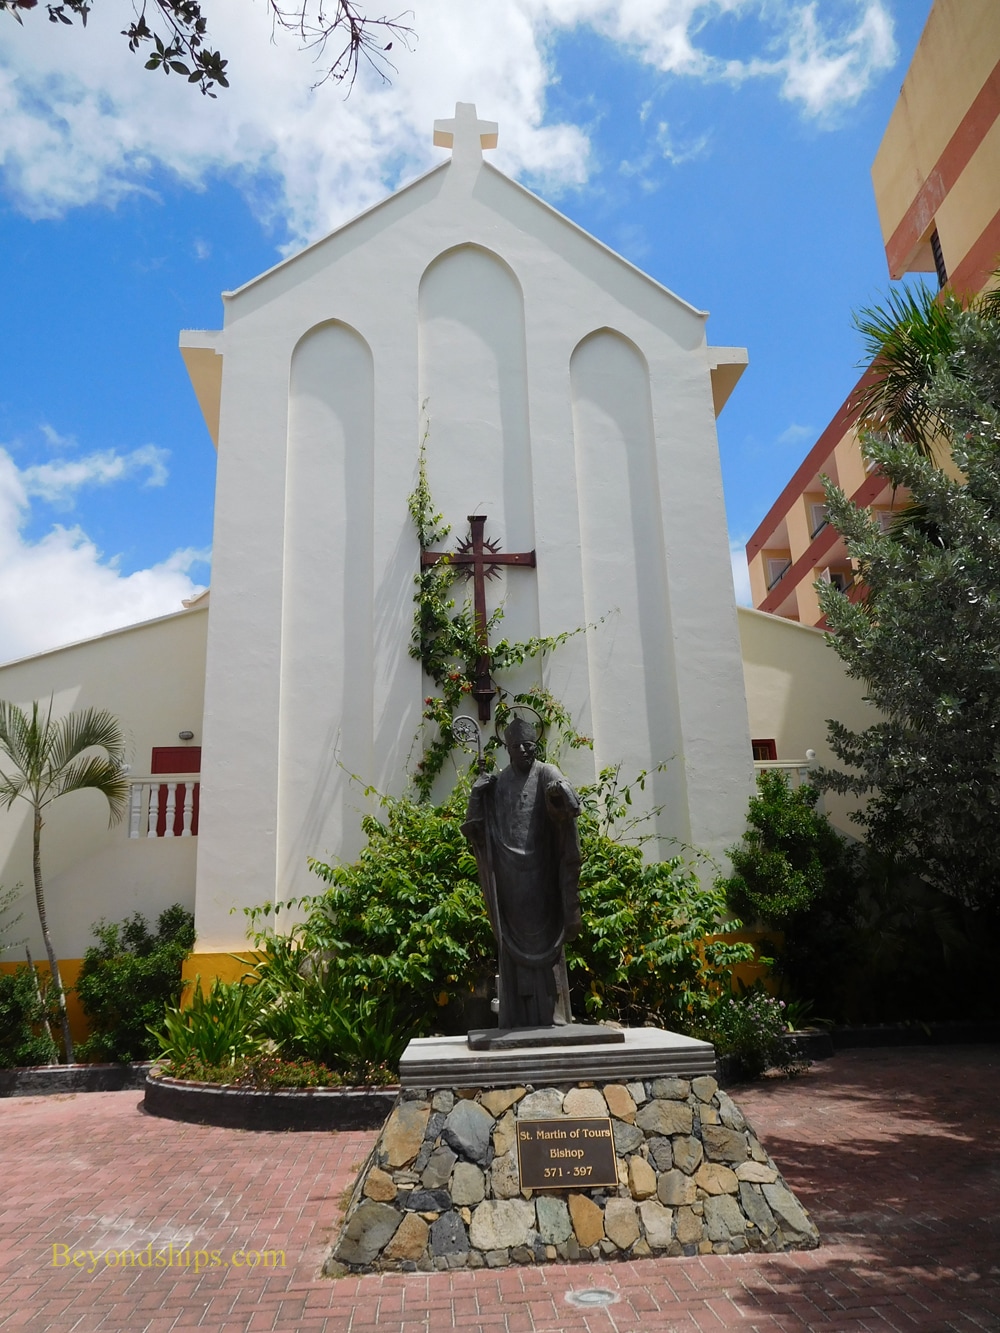 St. Martin of Tours Church, St. Maarten